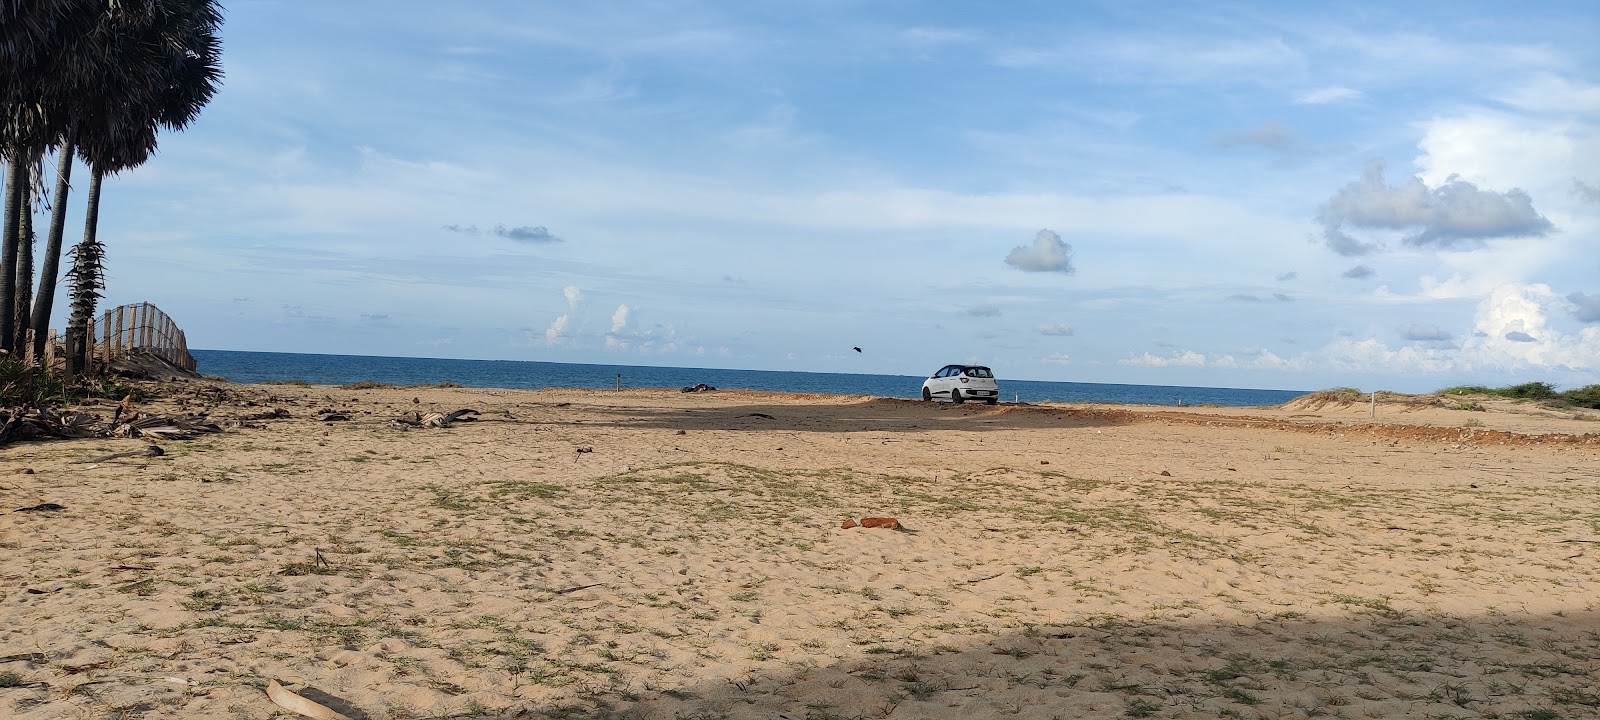 Foto de Manankudi Beach con recta y larga